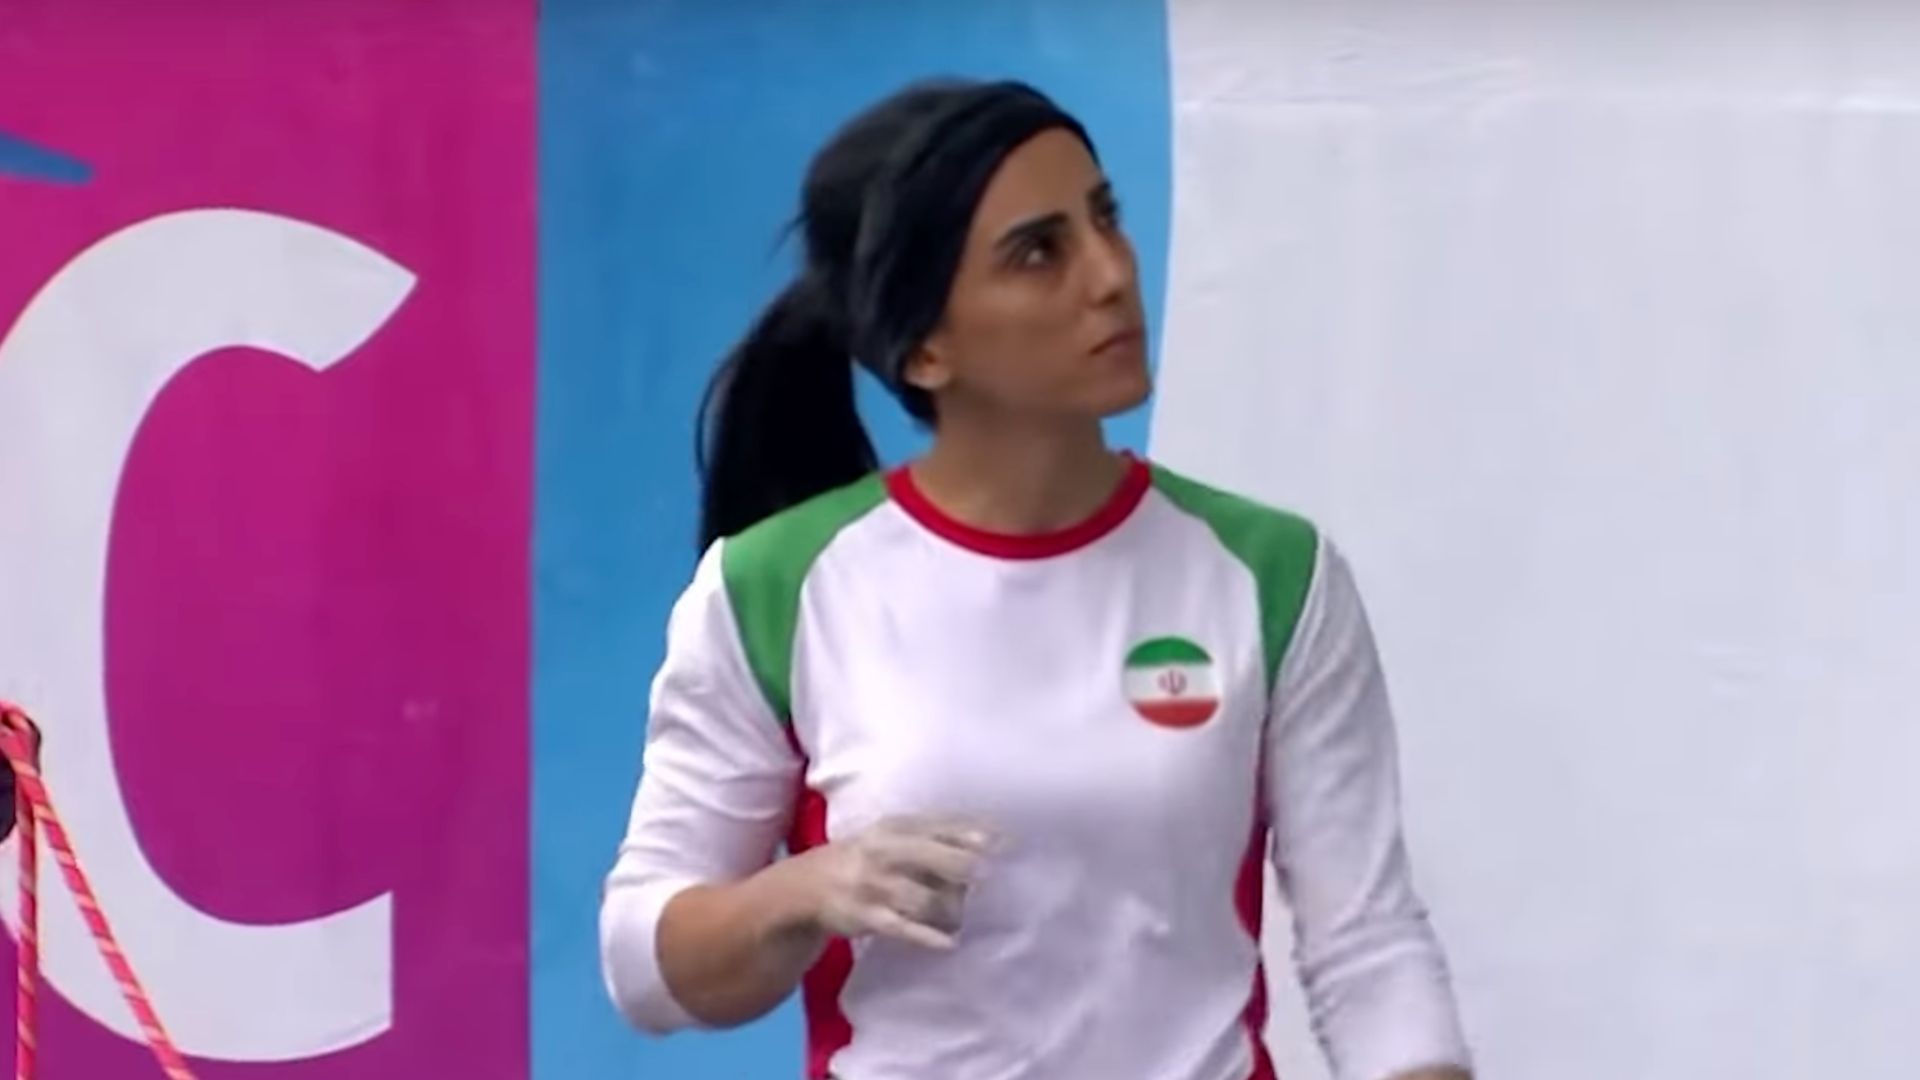 Iran : après avoir participé aux championnats sans hijab, Elnaz Rekabi n’a plus donné signe de vie